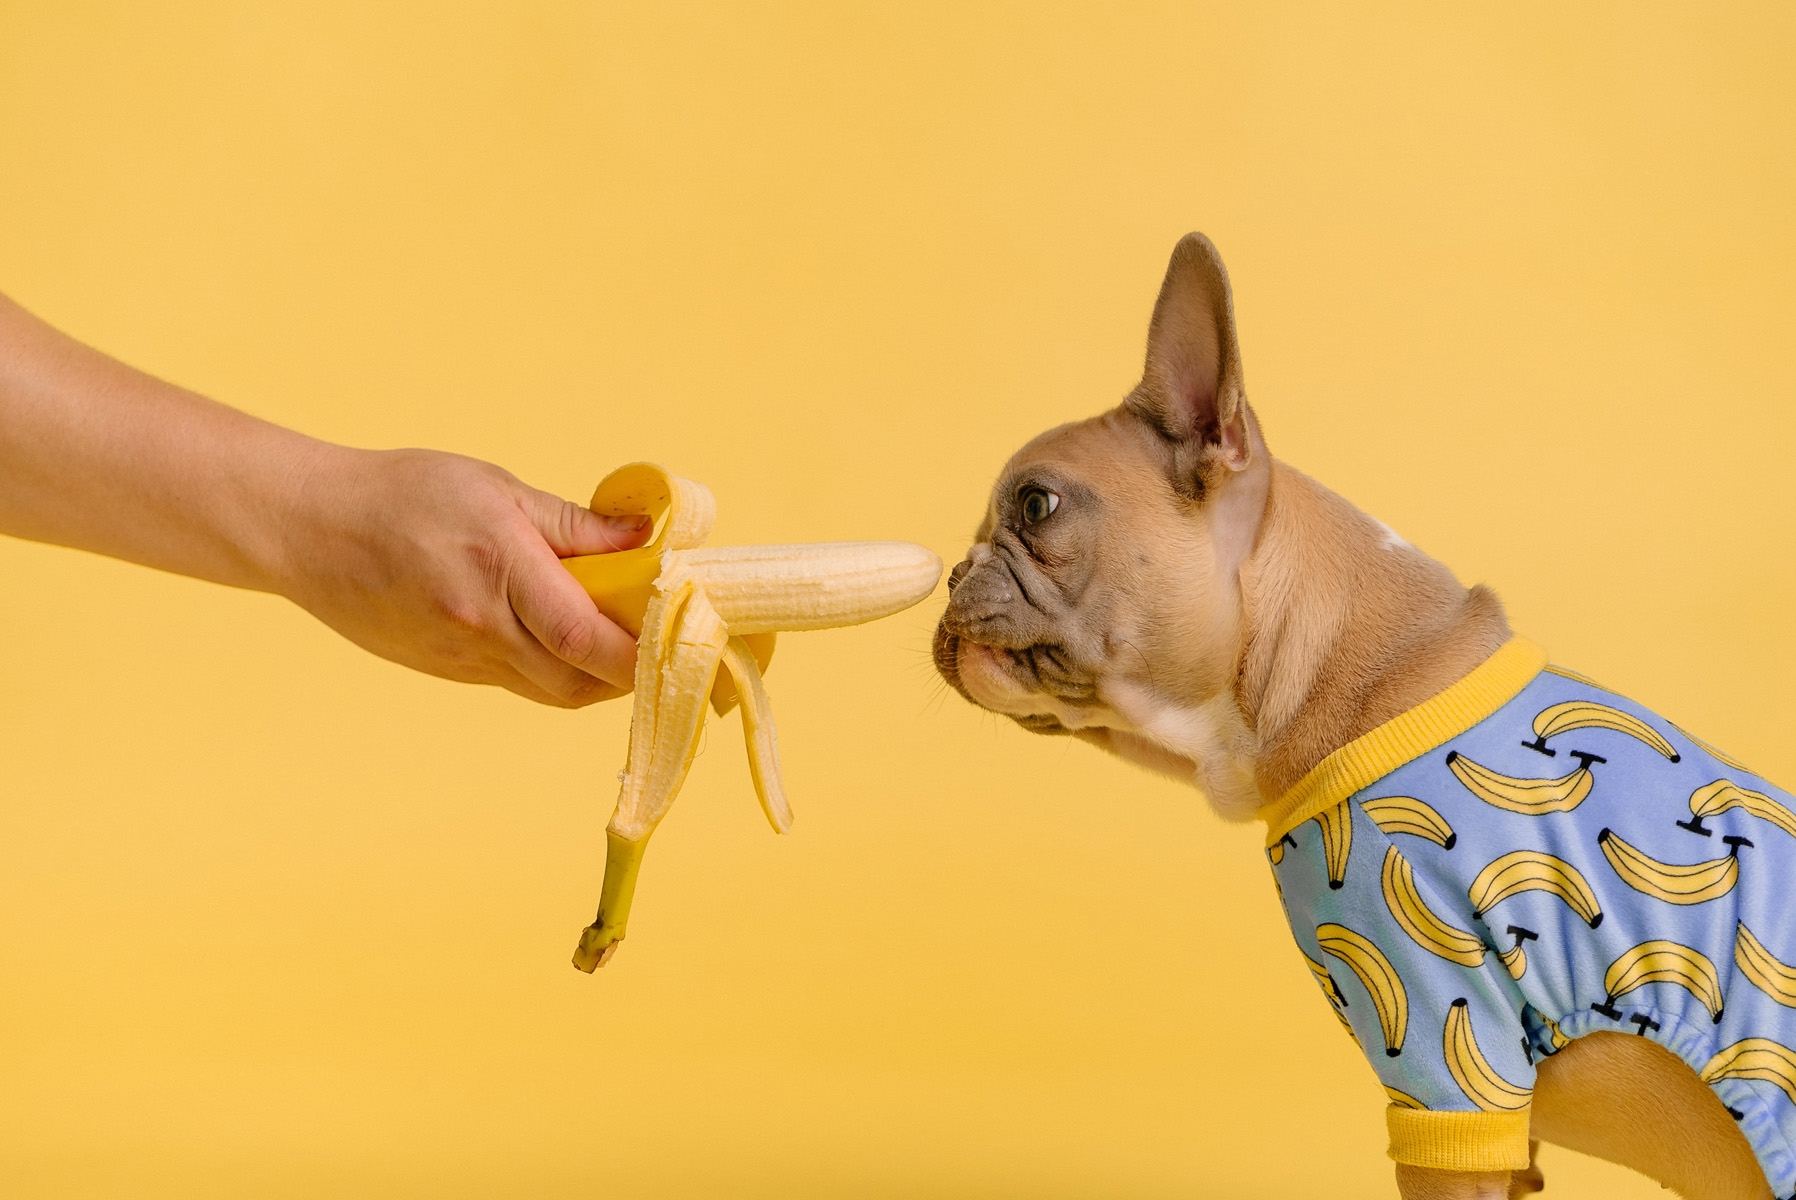 French bulldog eating banana in top